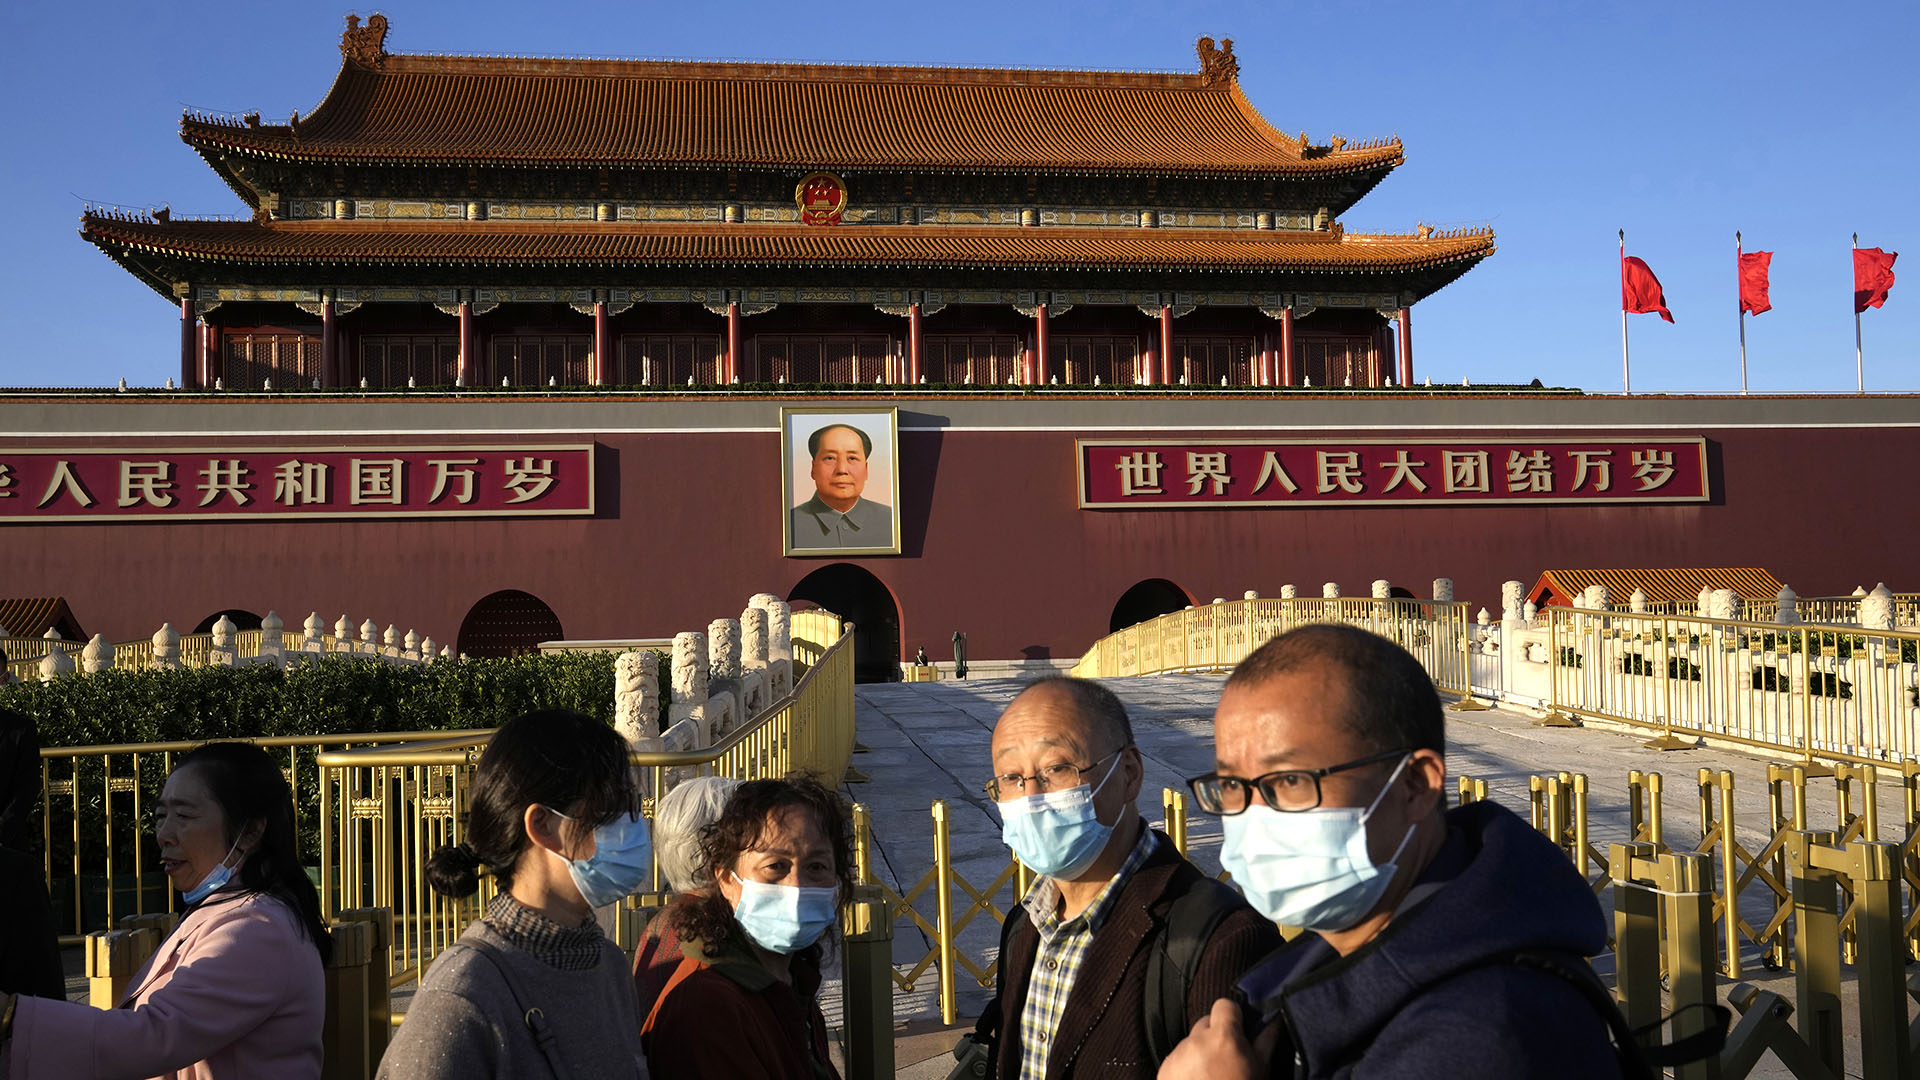 Los visitantes de la Puerta de Tiananmen llevan máscaras en Beijing, China, el 15 de octubre de 2021. En los últimos meses China endureció su política de "cero covid". (AP Photo/Ng Han Guan)